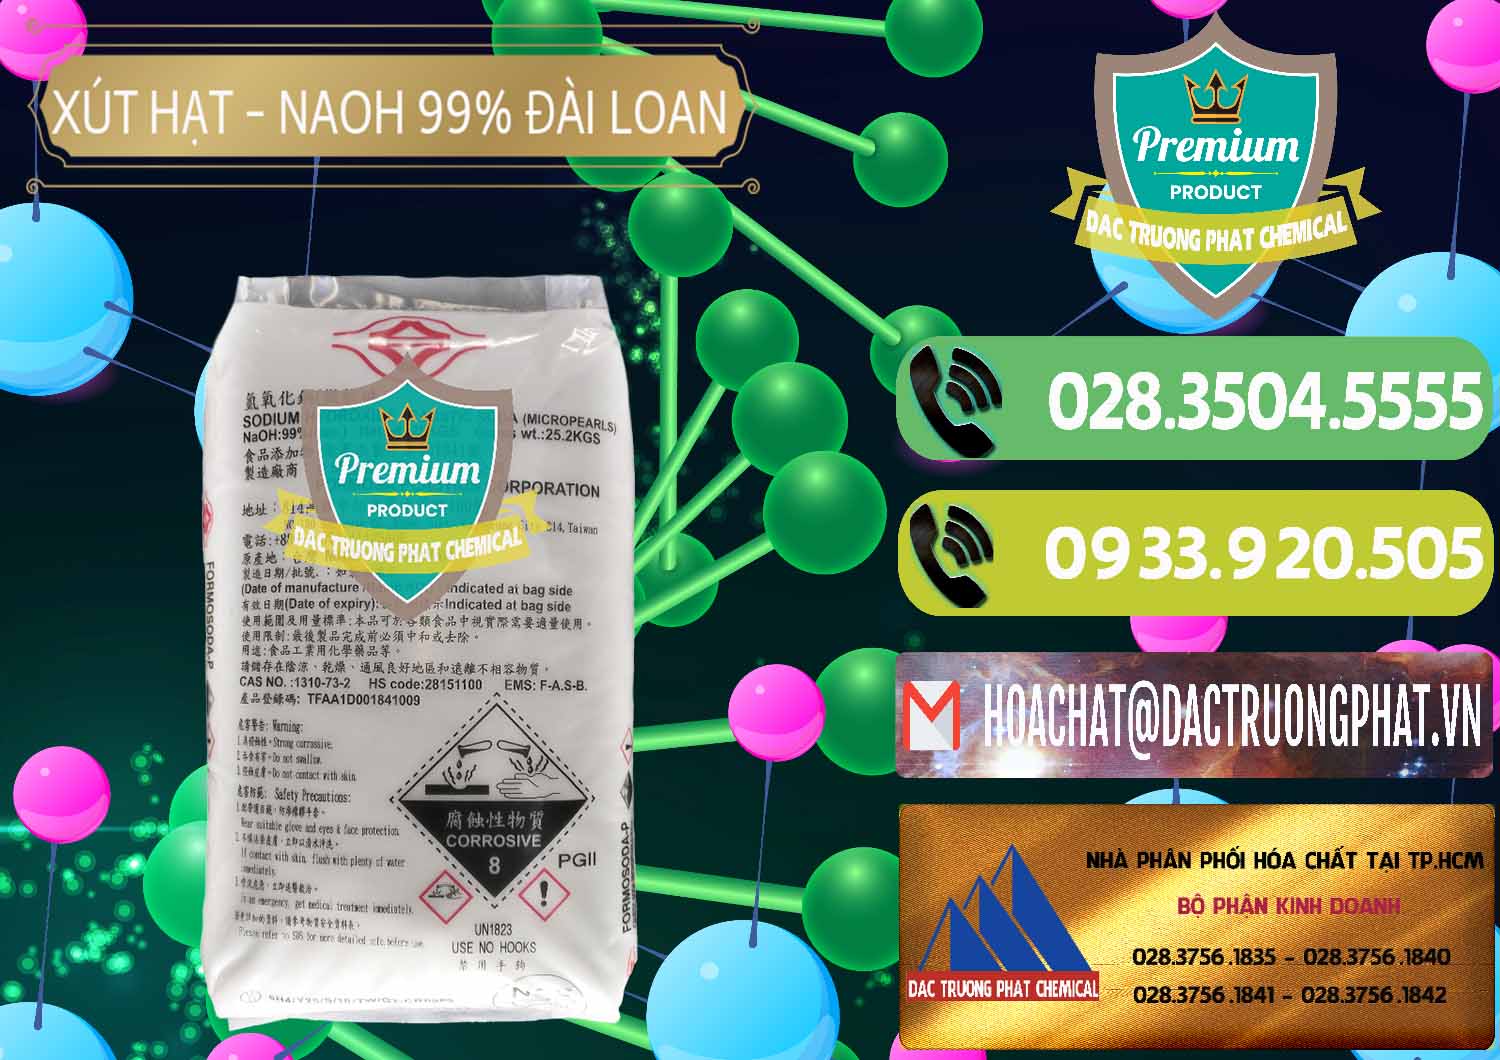 Cty chuyên nhập khẩu ( bán ) Xút Hạt - NaOH Bột 99% Đài Loan Taiwan Formosa - 0167 - Nơi chuyên bán - phân phối hóa chất tại TP.HCM - hoachatmientay.vn